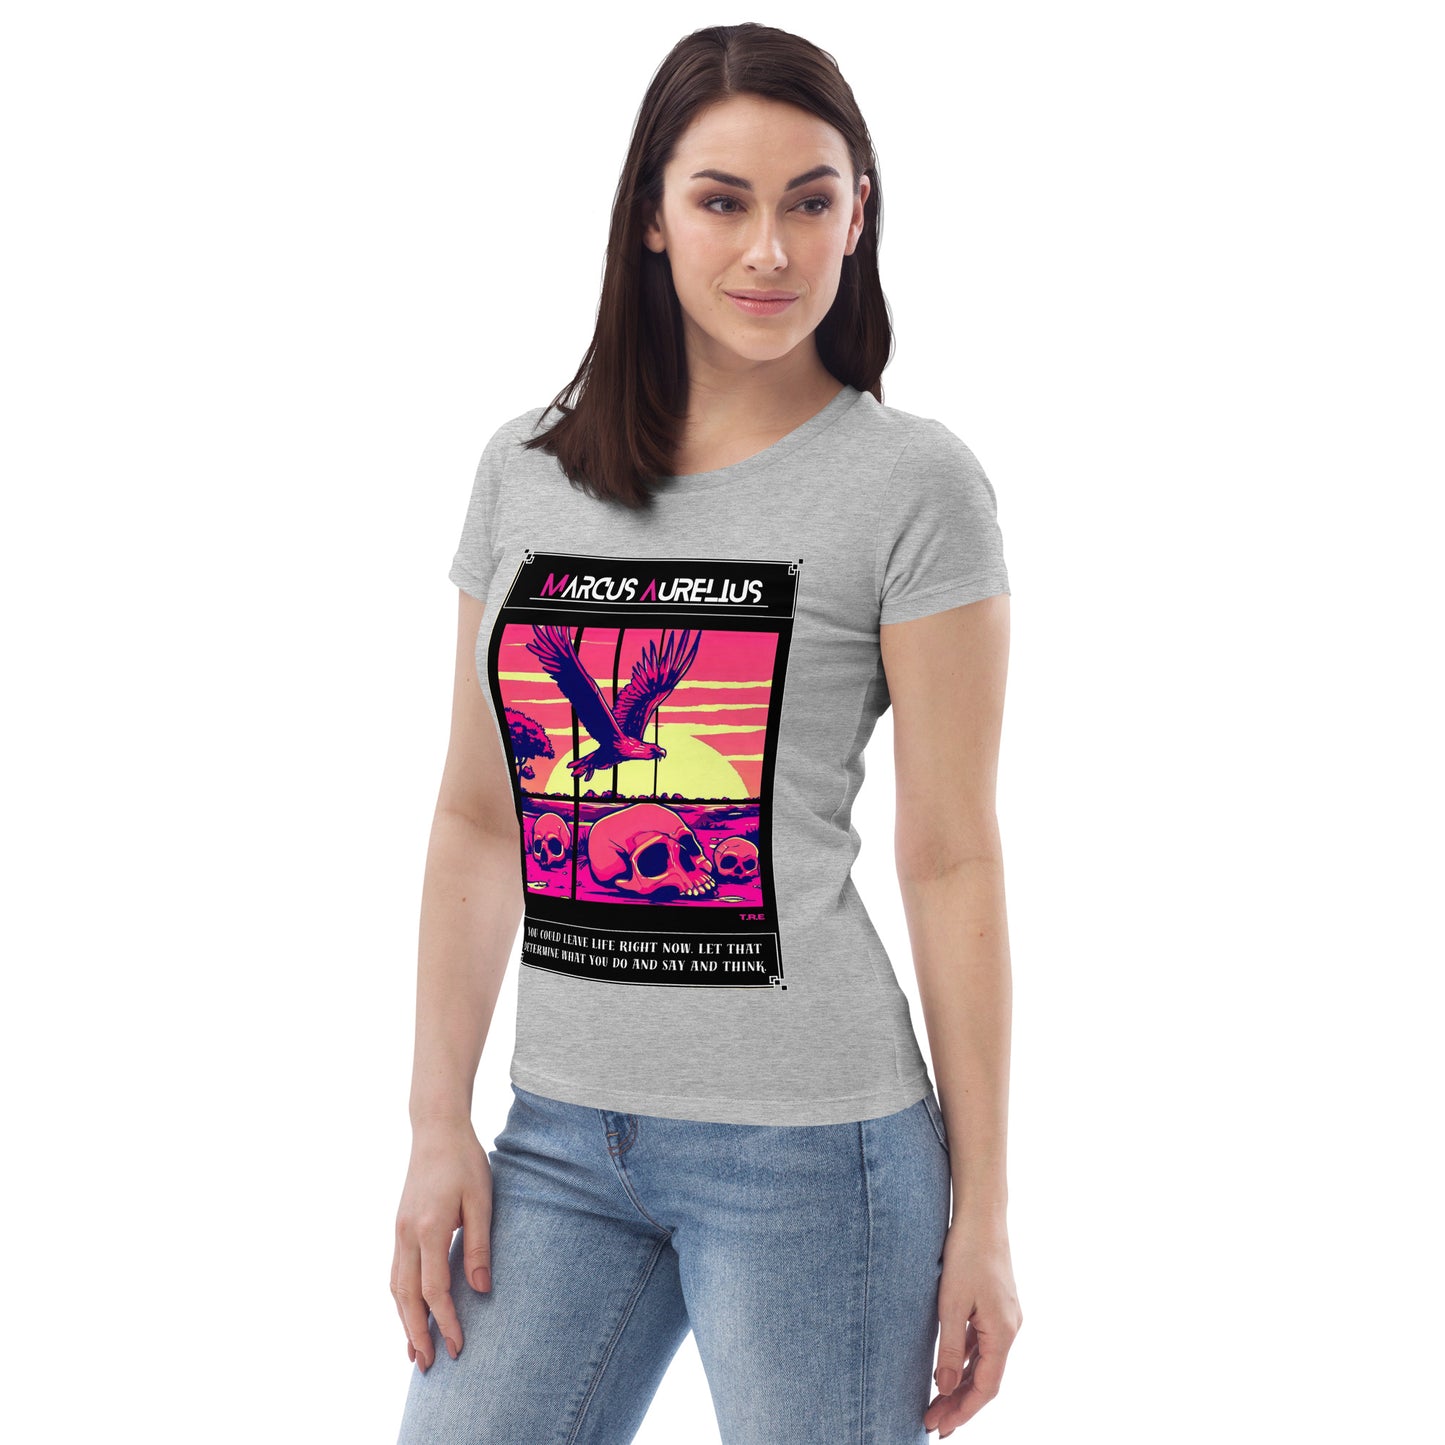 Women's Premium T-Shirt - Marcus Aurelius